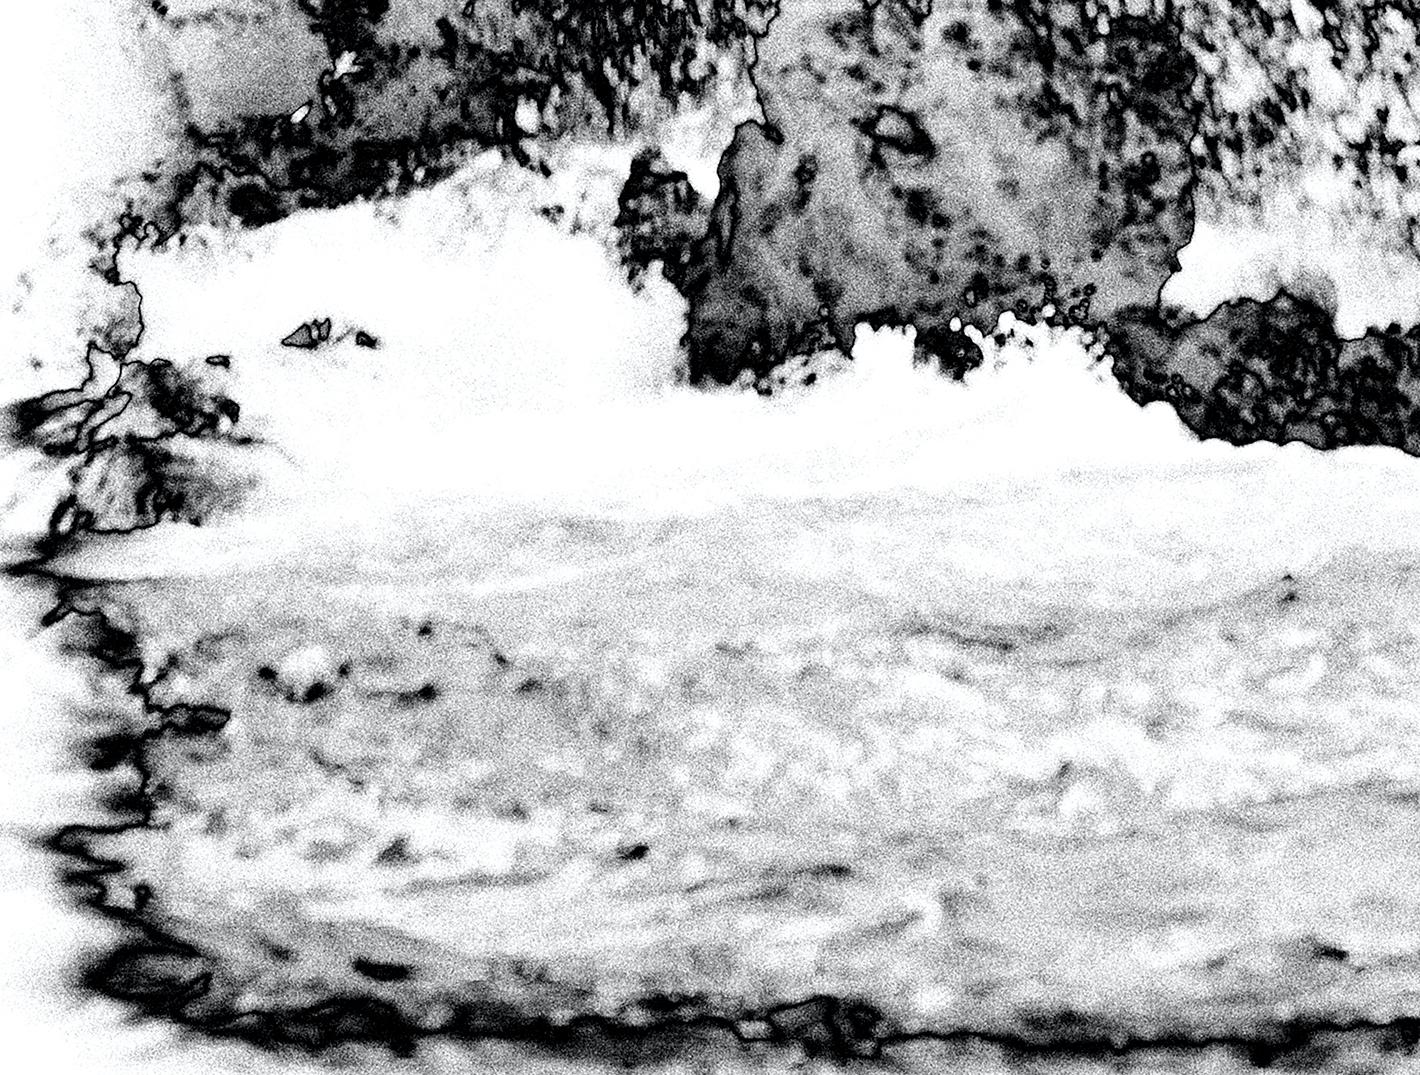 Wassermusik-Serie #5040: Landschaftsfotografie (Grau), Black and White Photograph, von Holly Gordon